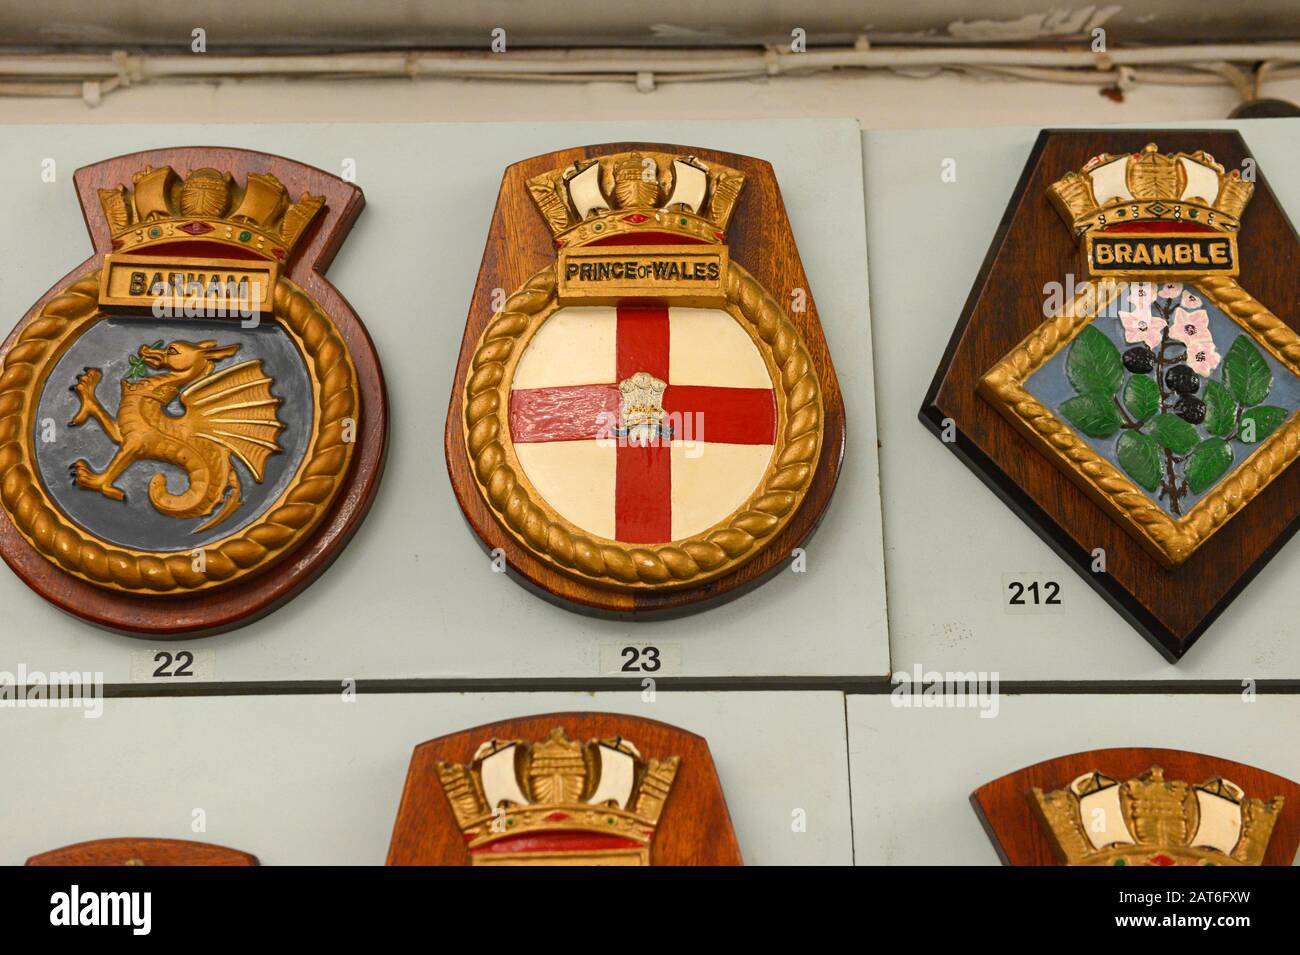 Exposition de nombreux insignes de navires de la Marine royale au musée Nothe fort, Weymouth, Dorset, Royaume-Uni Banque D'Images